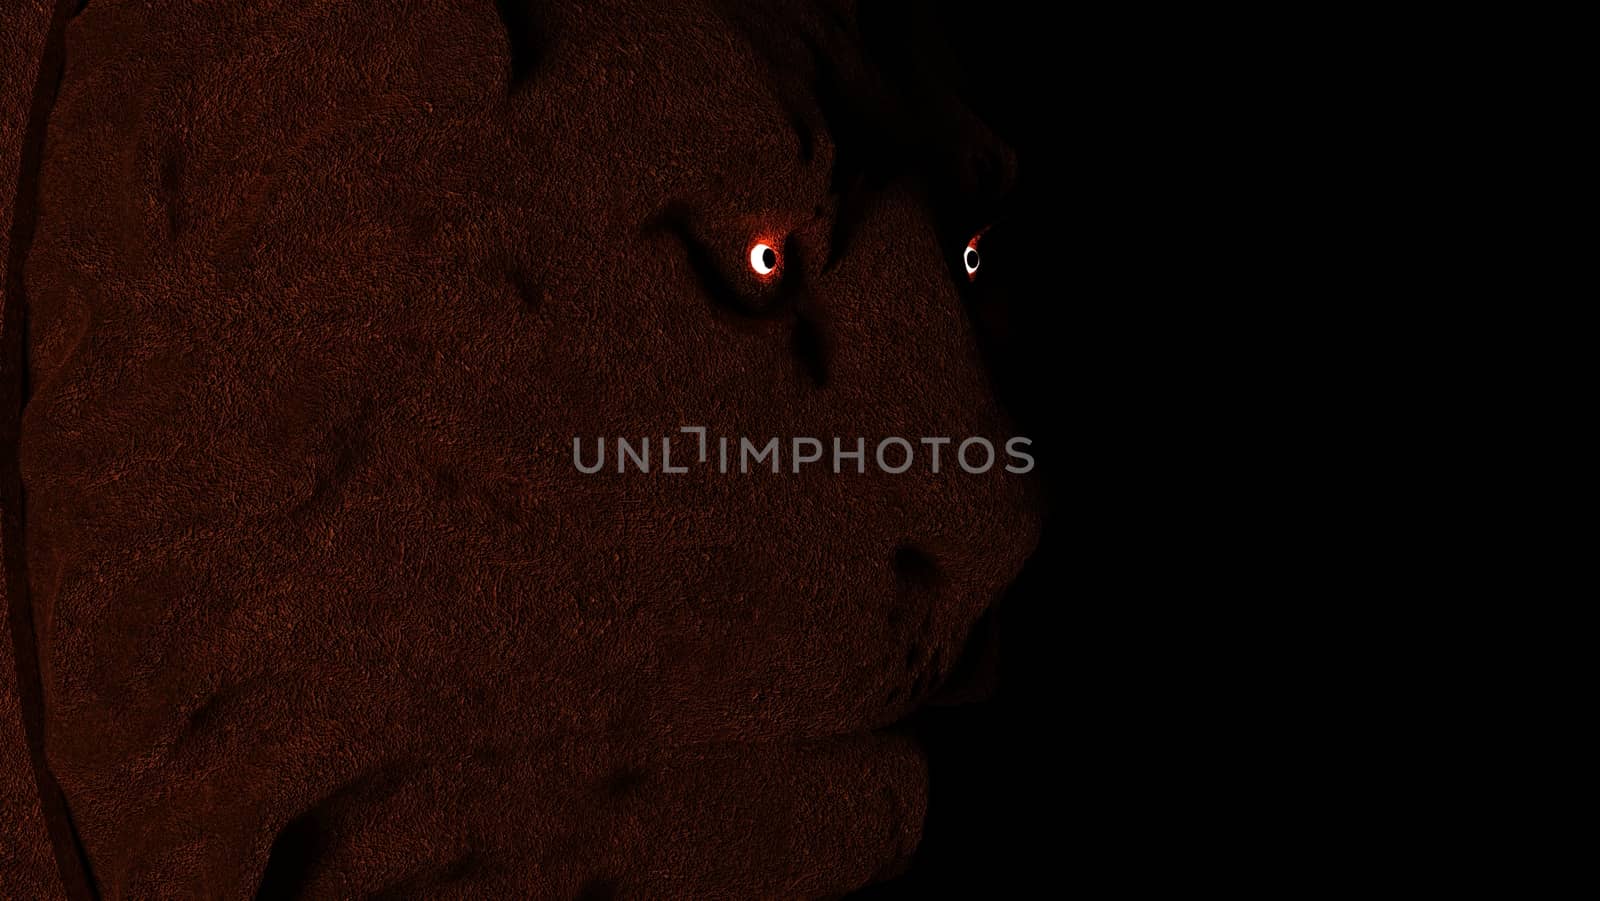 Lion close up face showing on black background, illustration. 3d rendered.